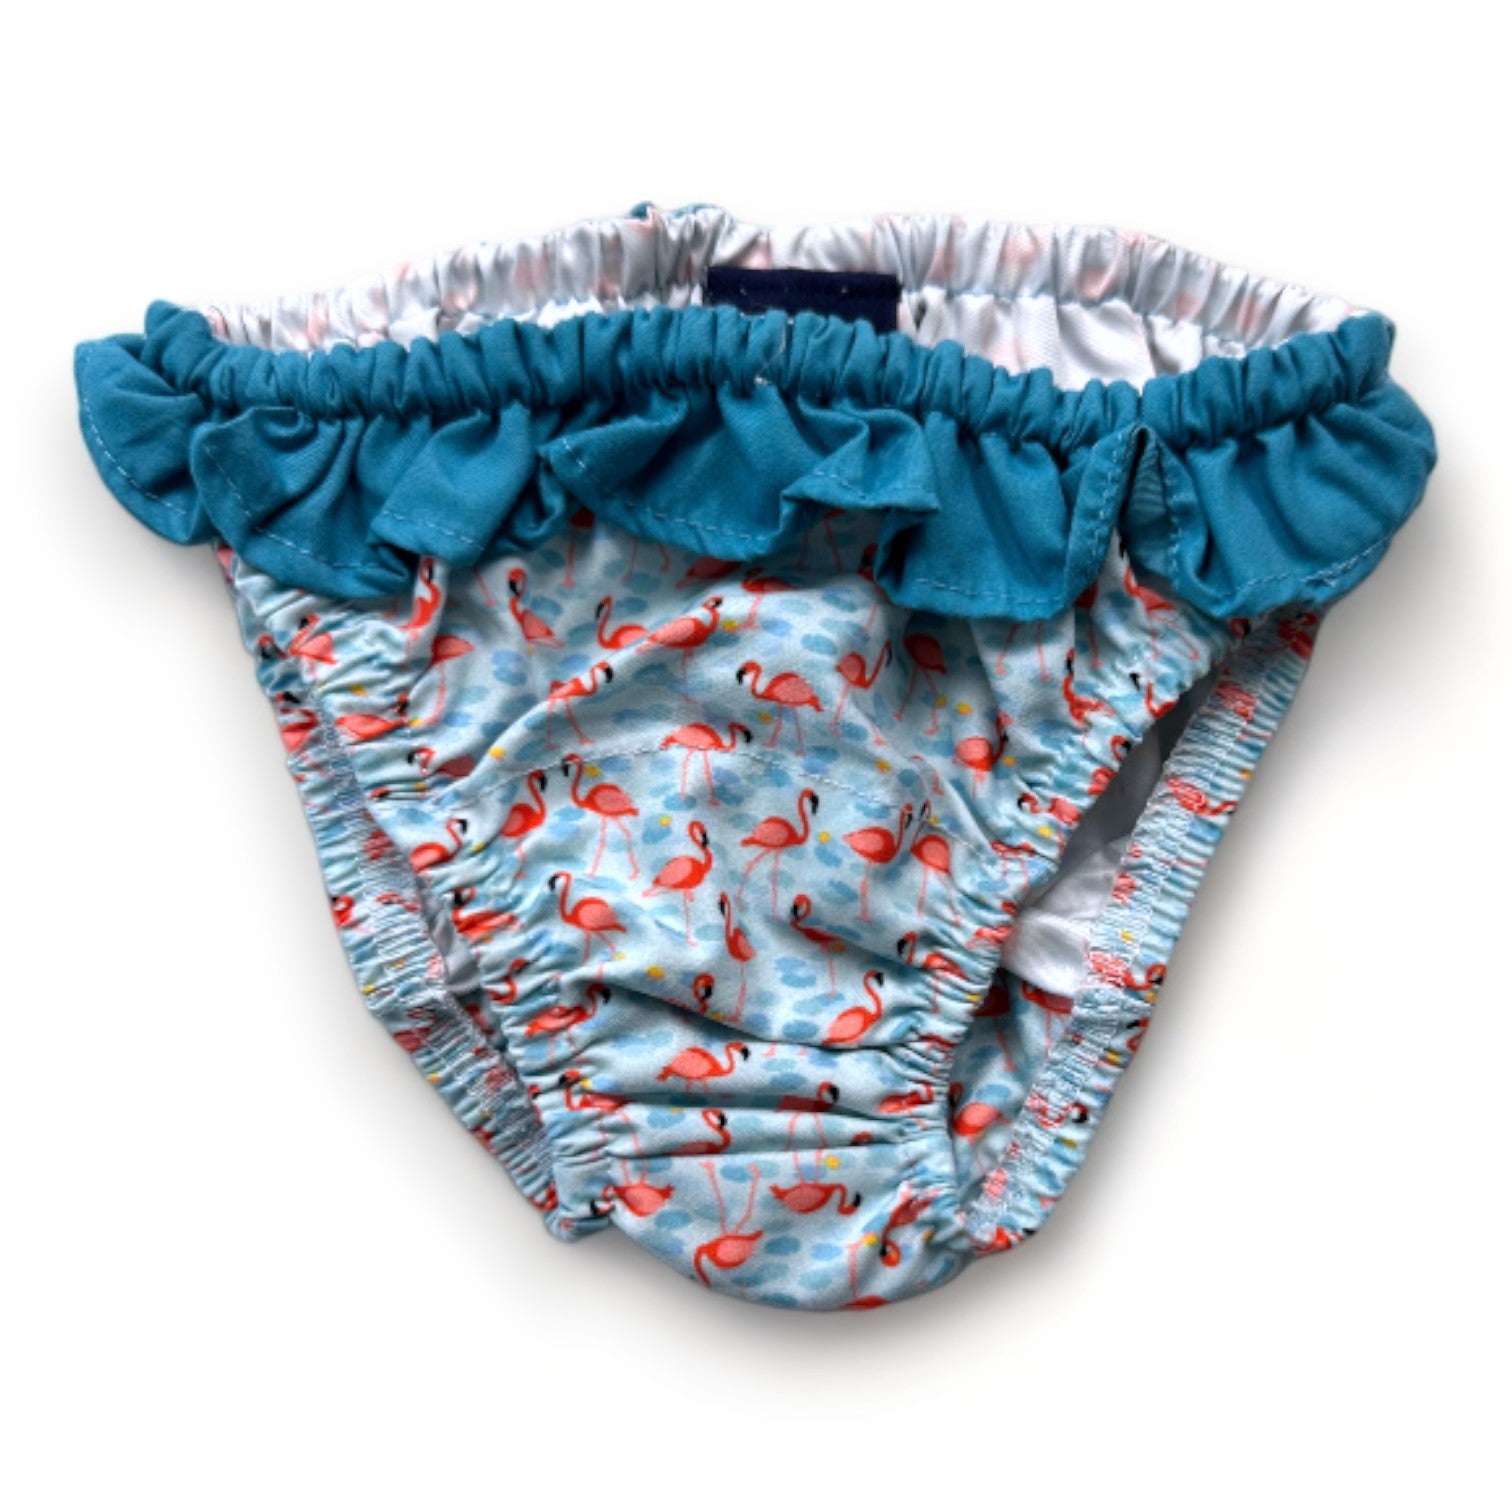 GILI'S SWIMWEAR - Culotte de bain bleue avec imprimés flamant rose - 12 mois